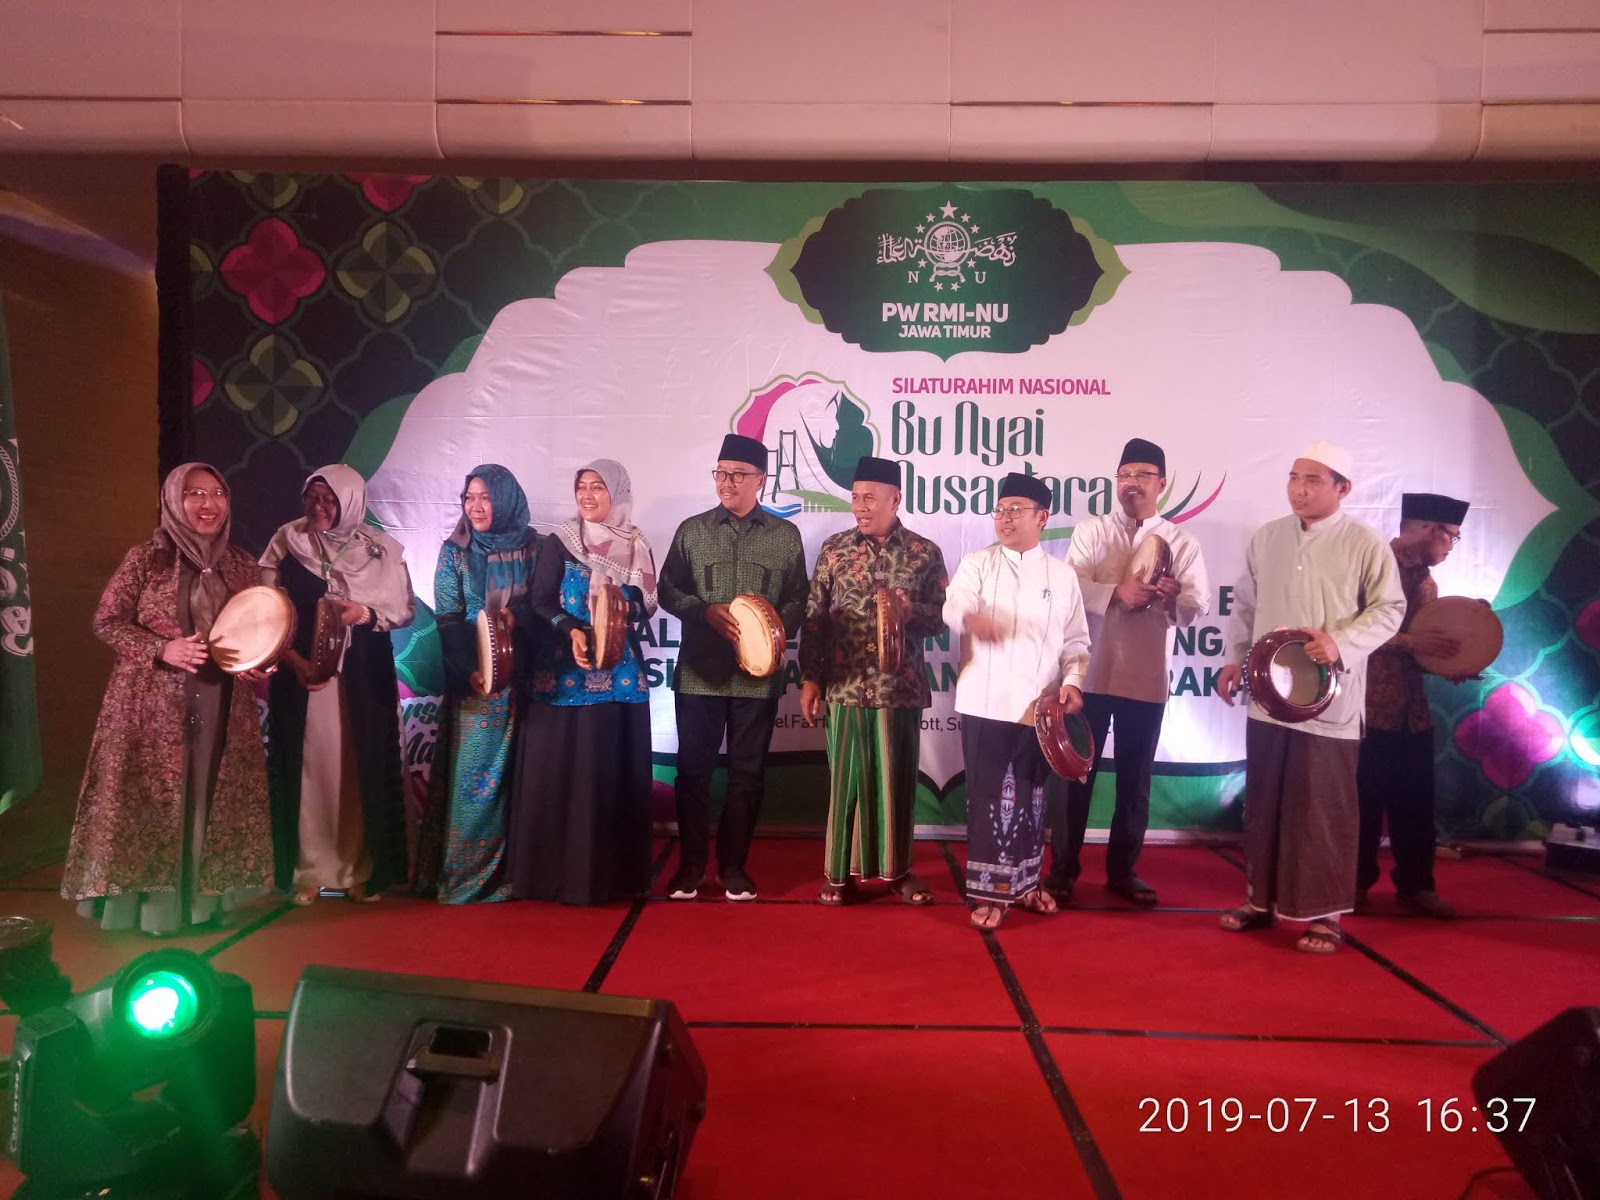 Forum Silaturahmi Bu Nyai Nusantara digelar di Surabaya, 14-15 Juli 2019. (Foto: ist/ngopibareng.id)